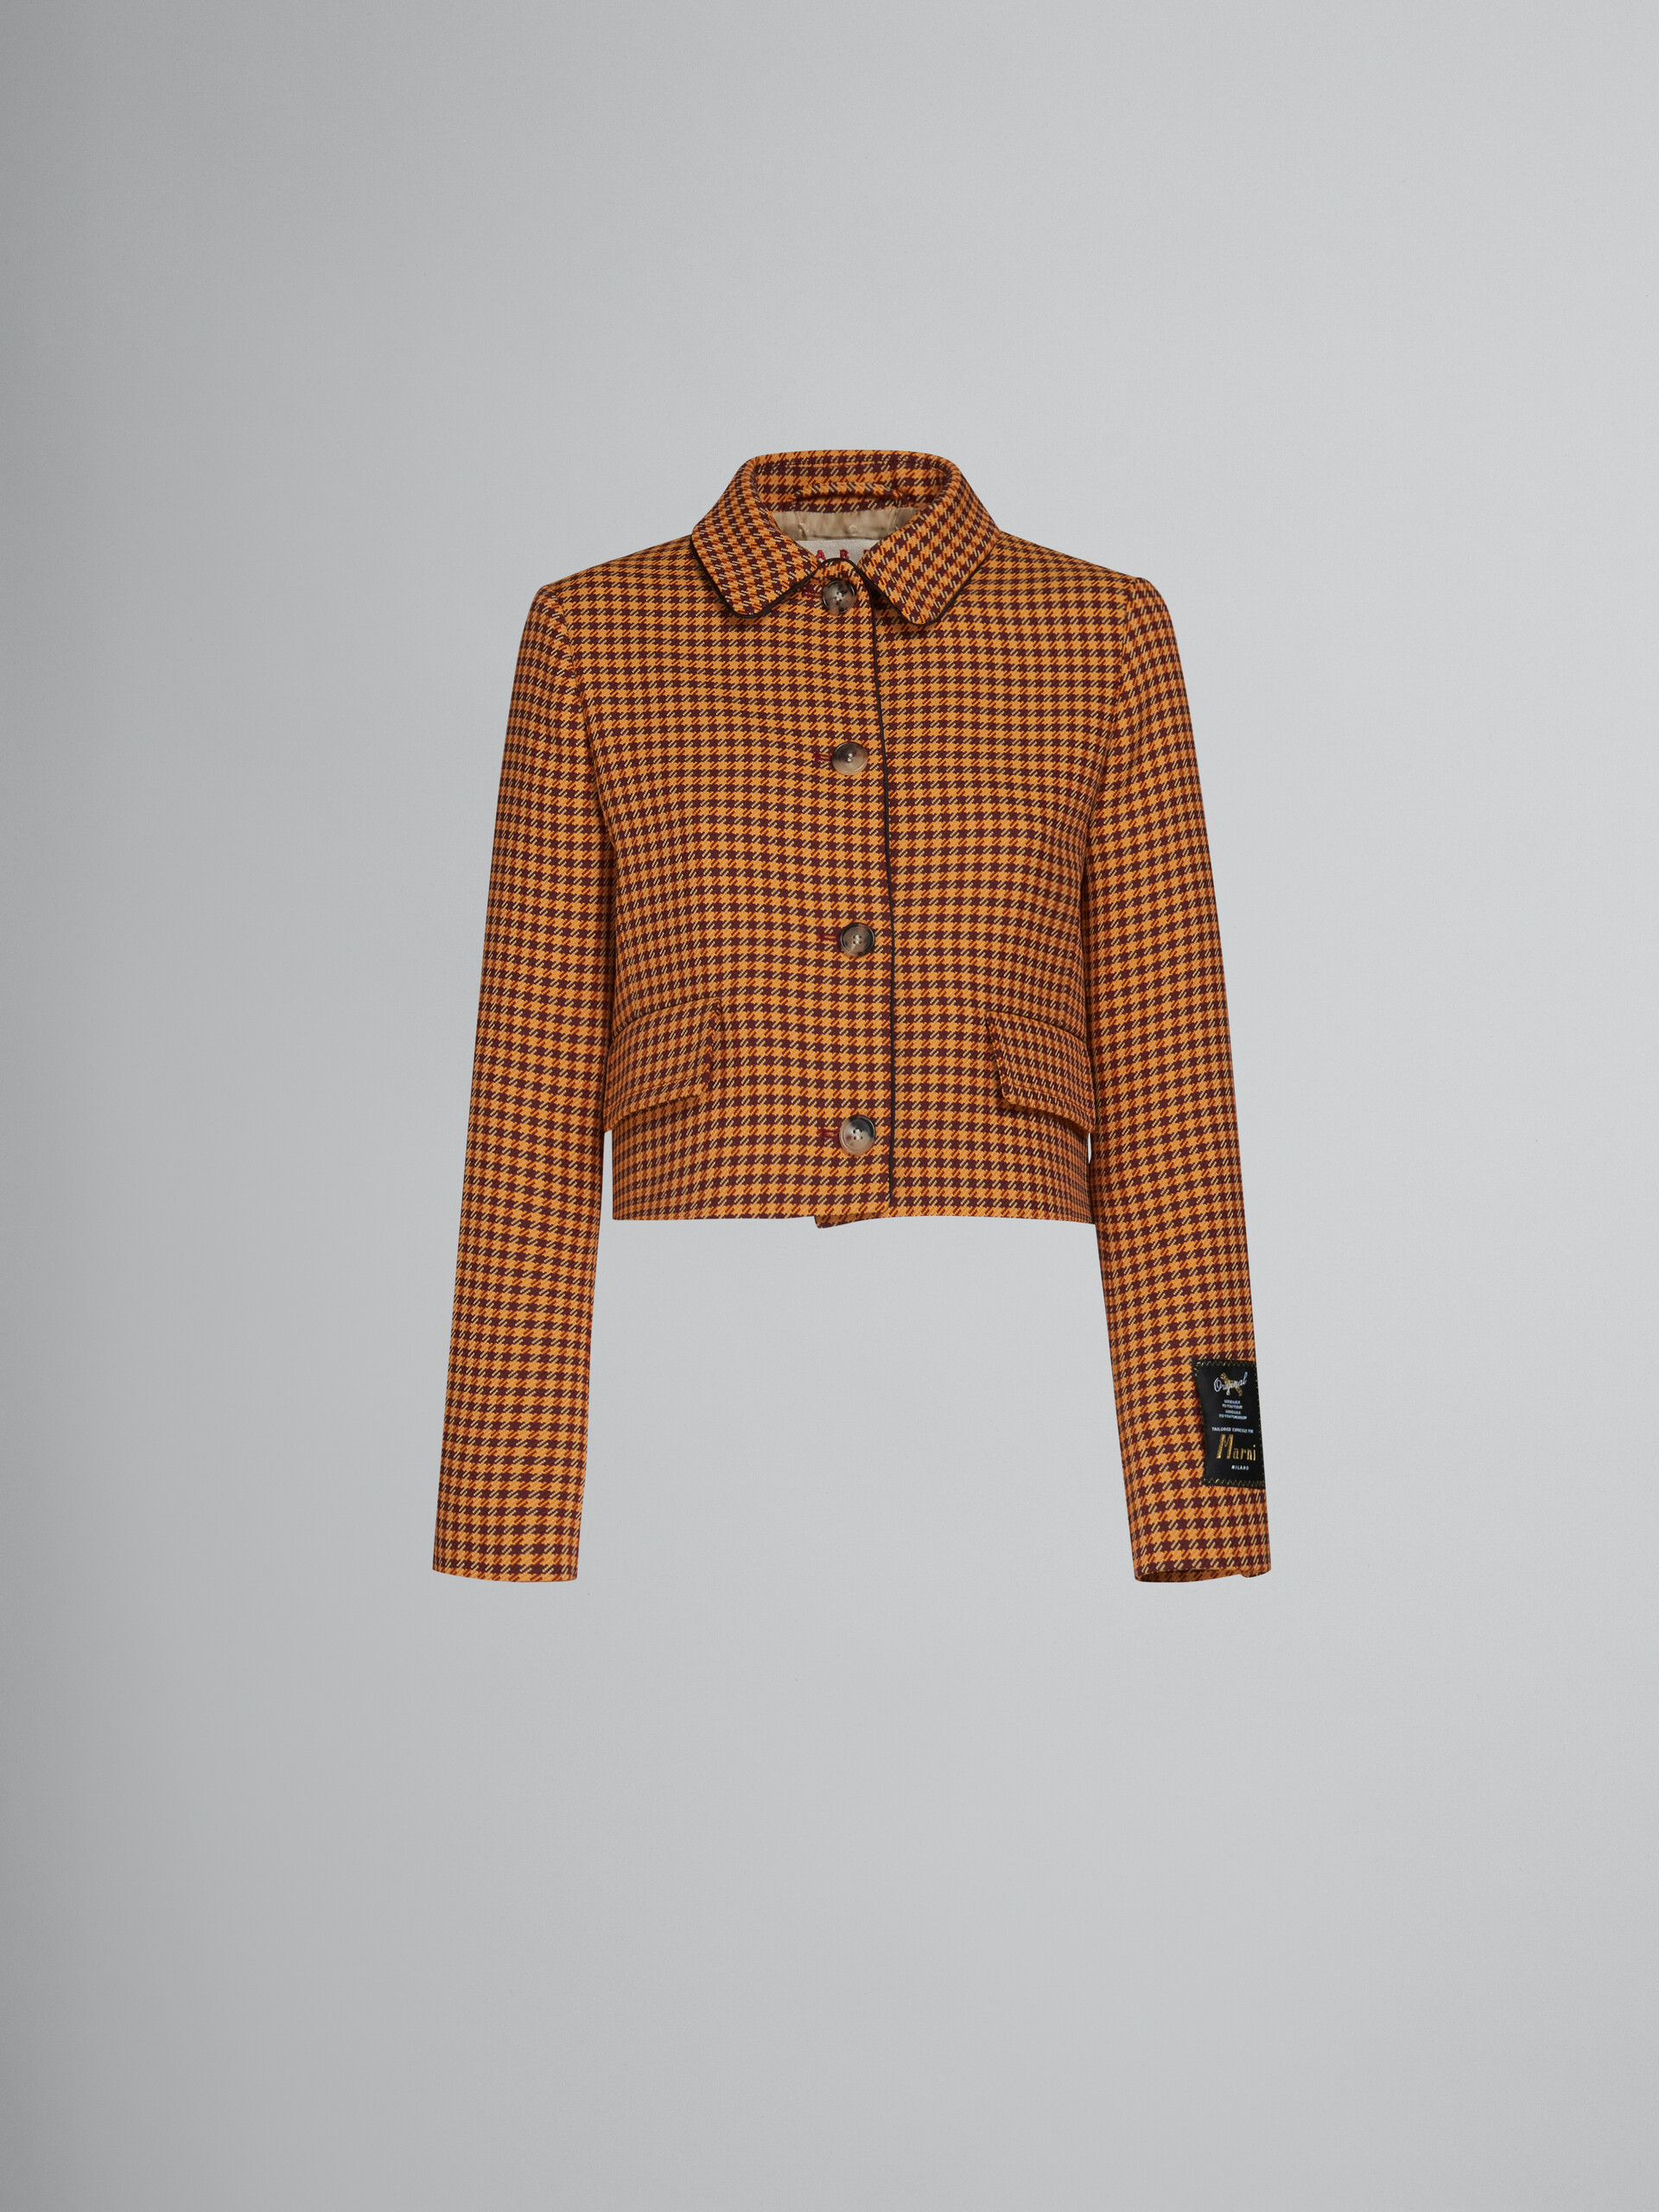 Veste courte à carreaux orange et bordeaux - Manteaux - Image 1